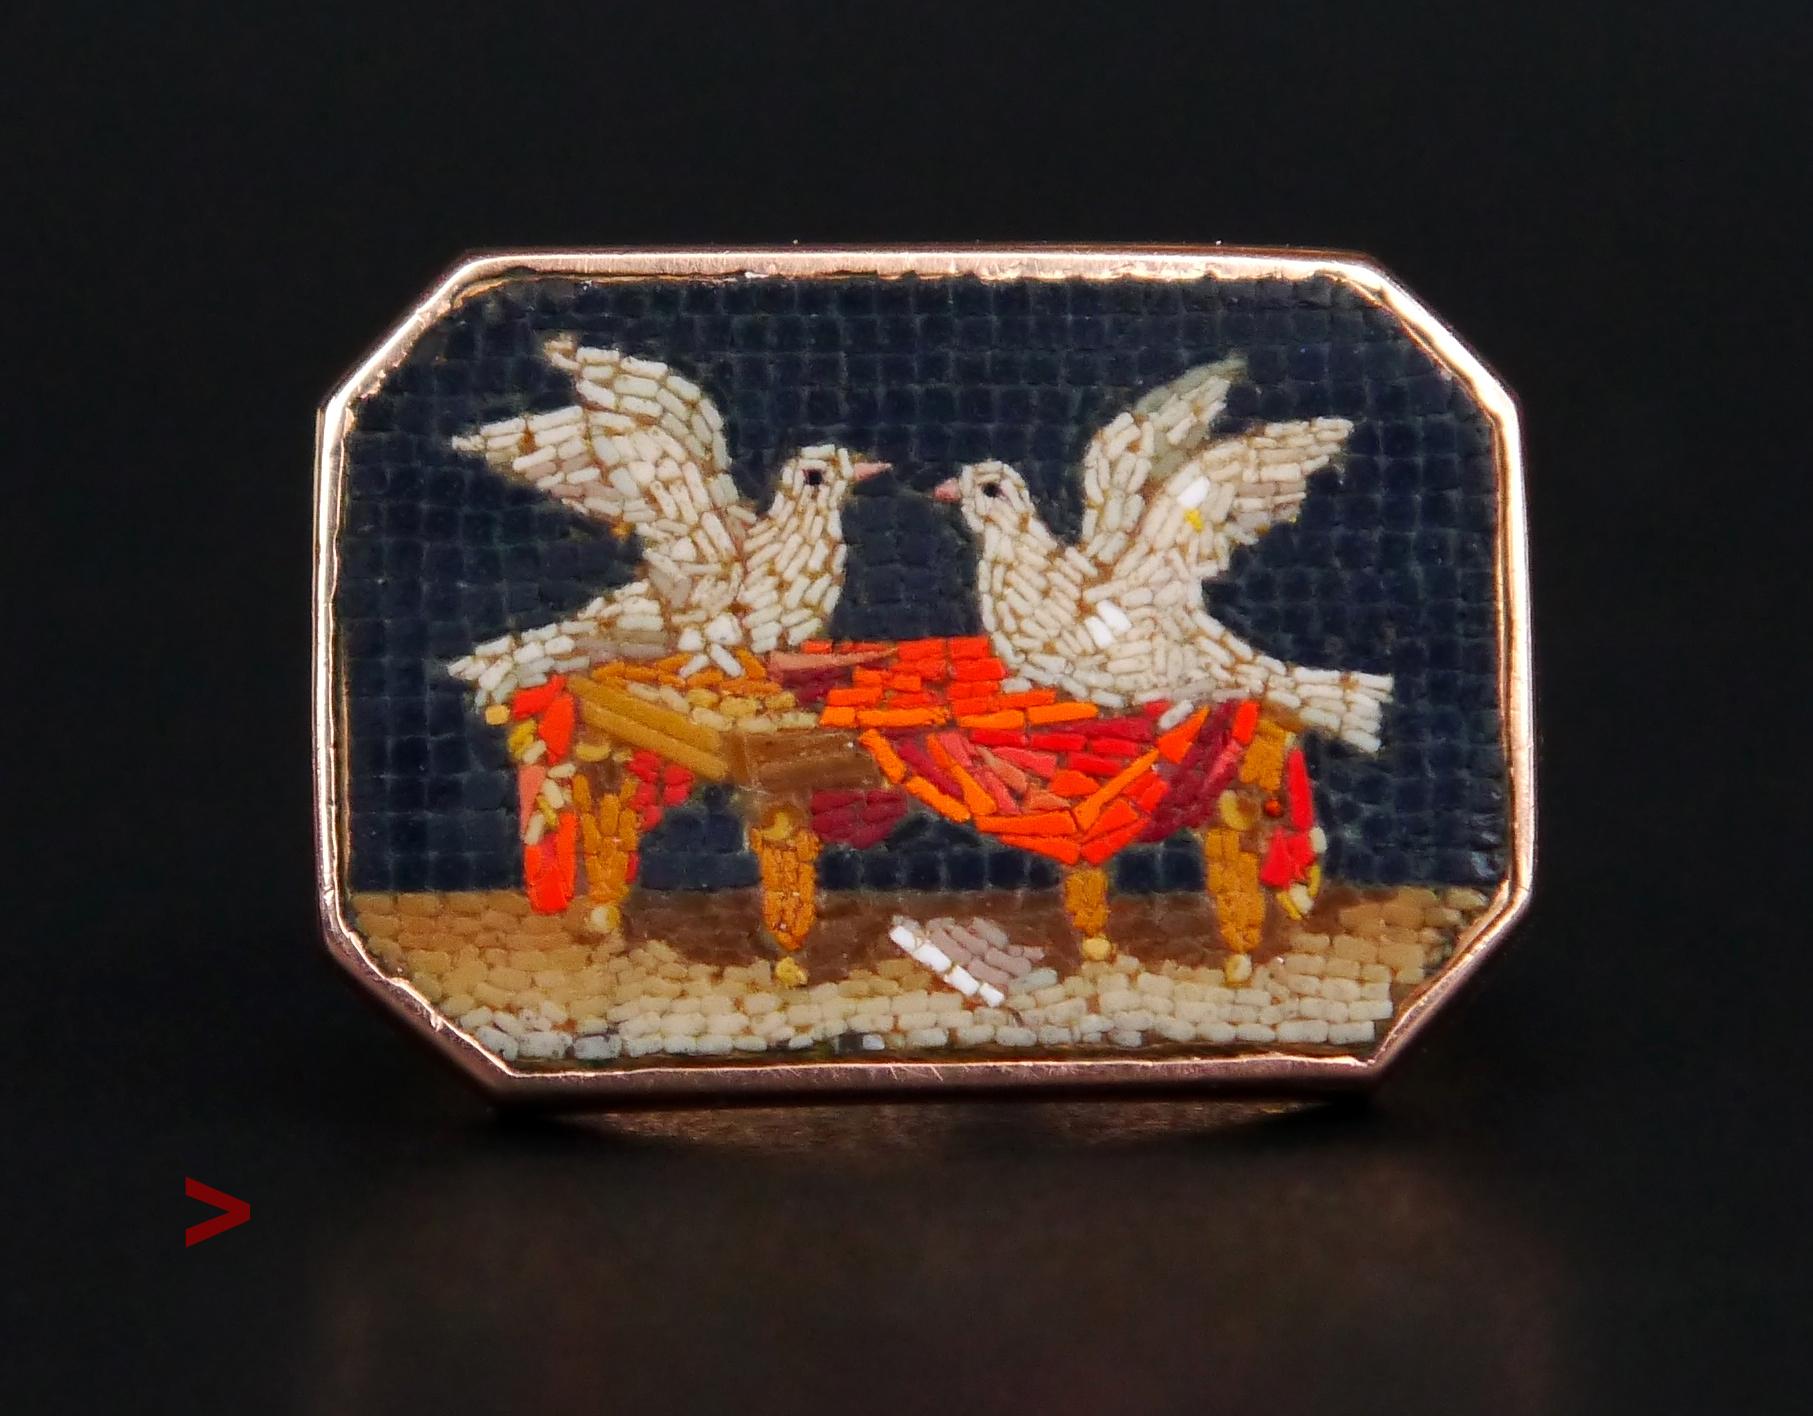 Magnifique scène italienne ancienne en mosaïque octogonale représentant deux colombes nichant ensemble dans les plis d'un manteau rouge.

La Mosaïque est enchâssée dans une monture en or rose 18 carats de forme élégante. Trueing est une forme de